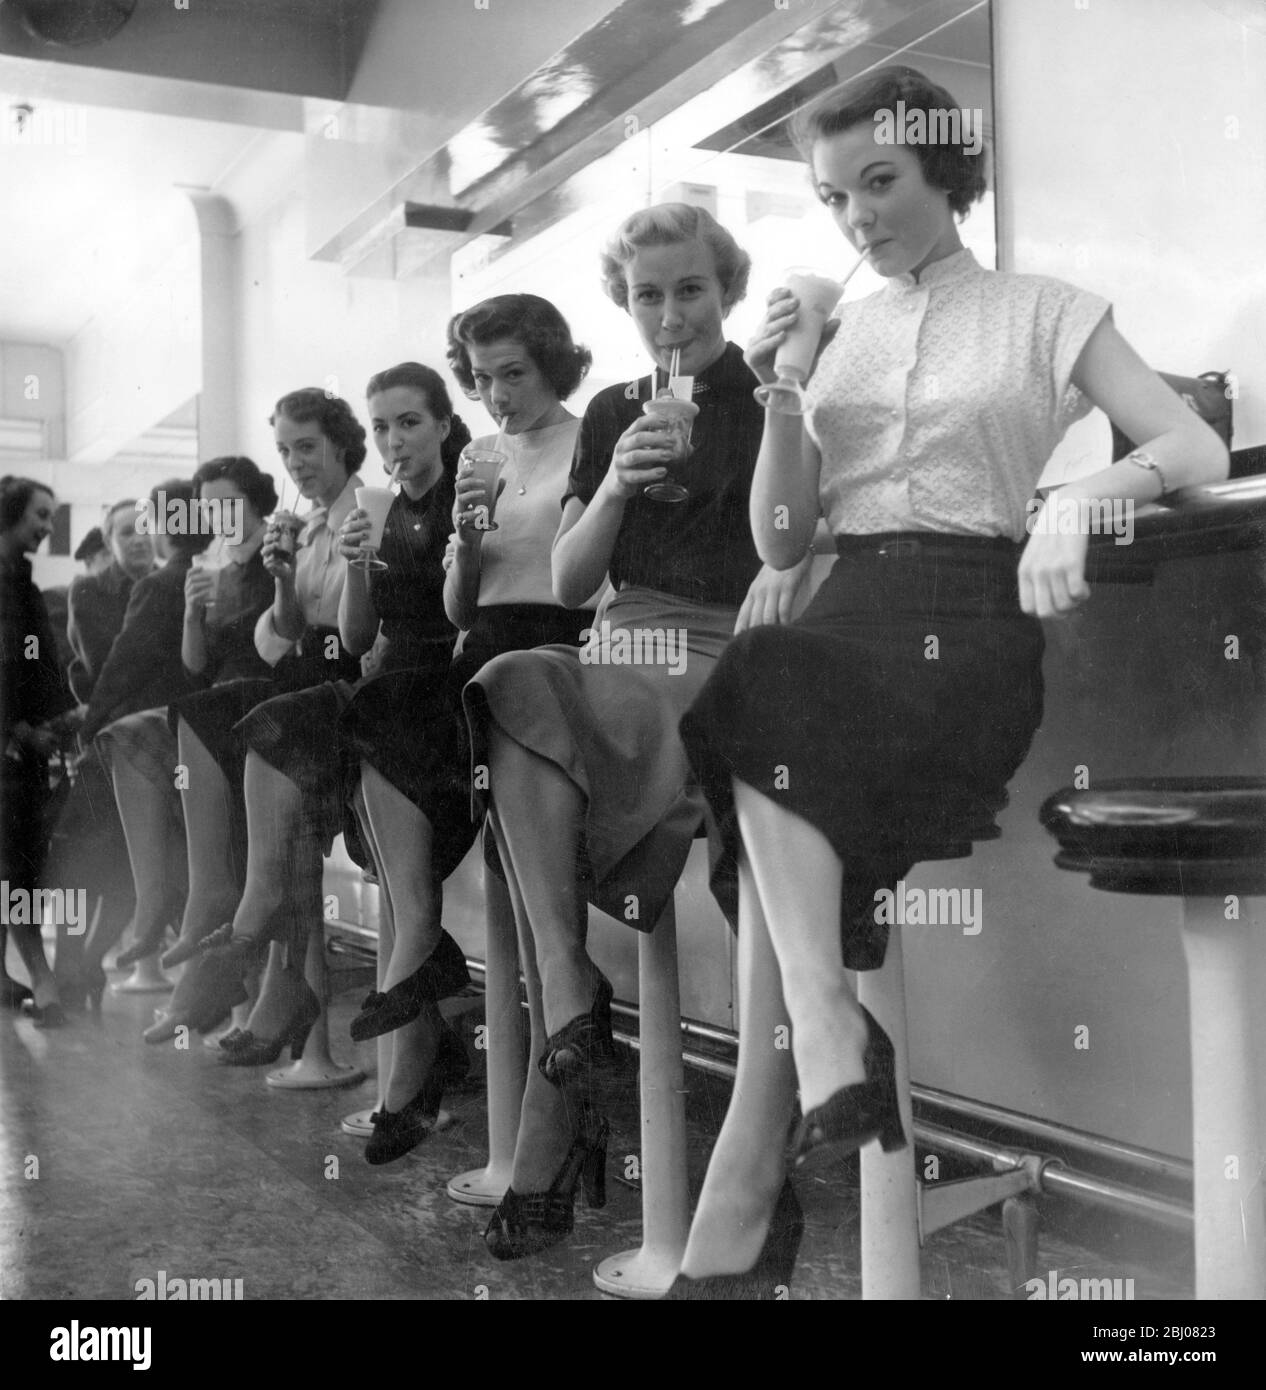 Le ragazze si siedono sugli sgabelli presso il bancone con una varietà di bevande fredde presso un bar a latte in Leicester Square, Londra, Inghilterra - 1951 Foto Stock